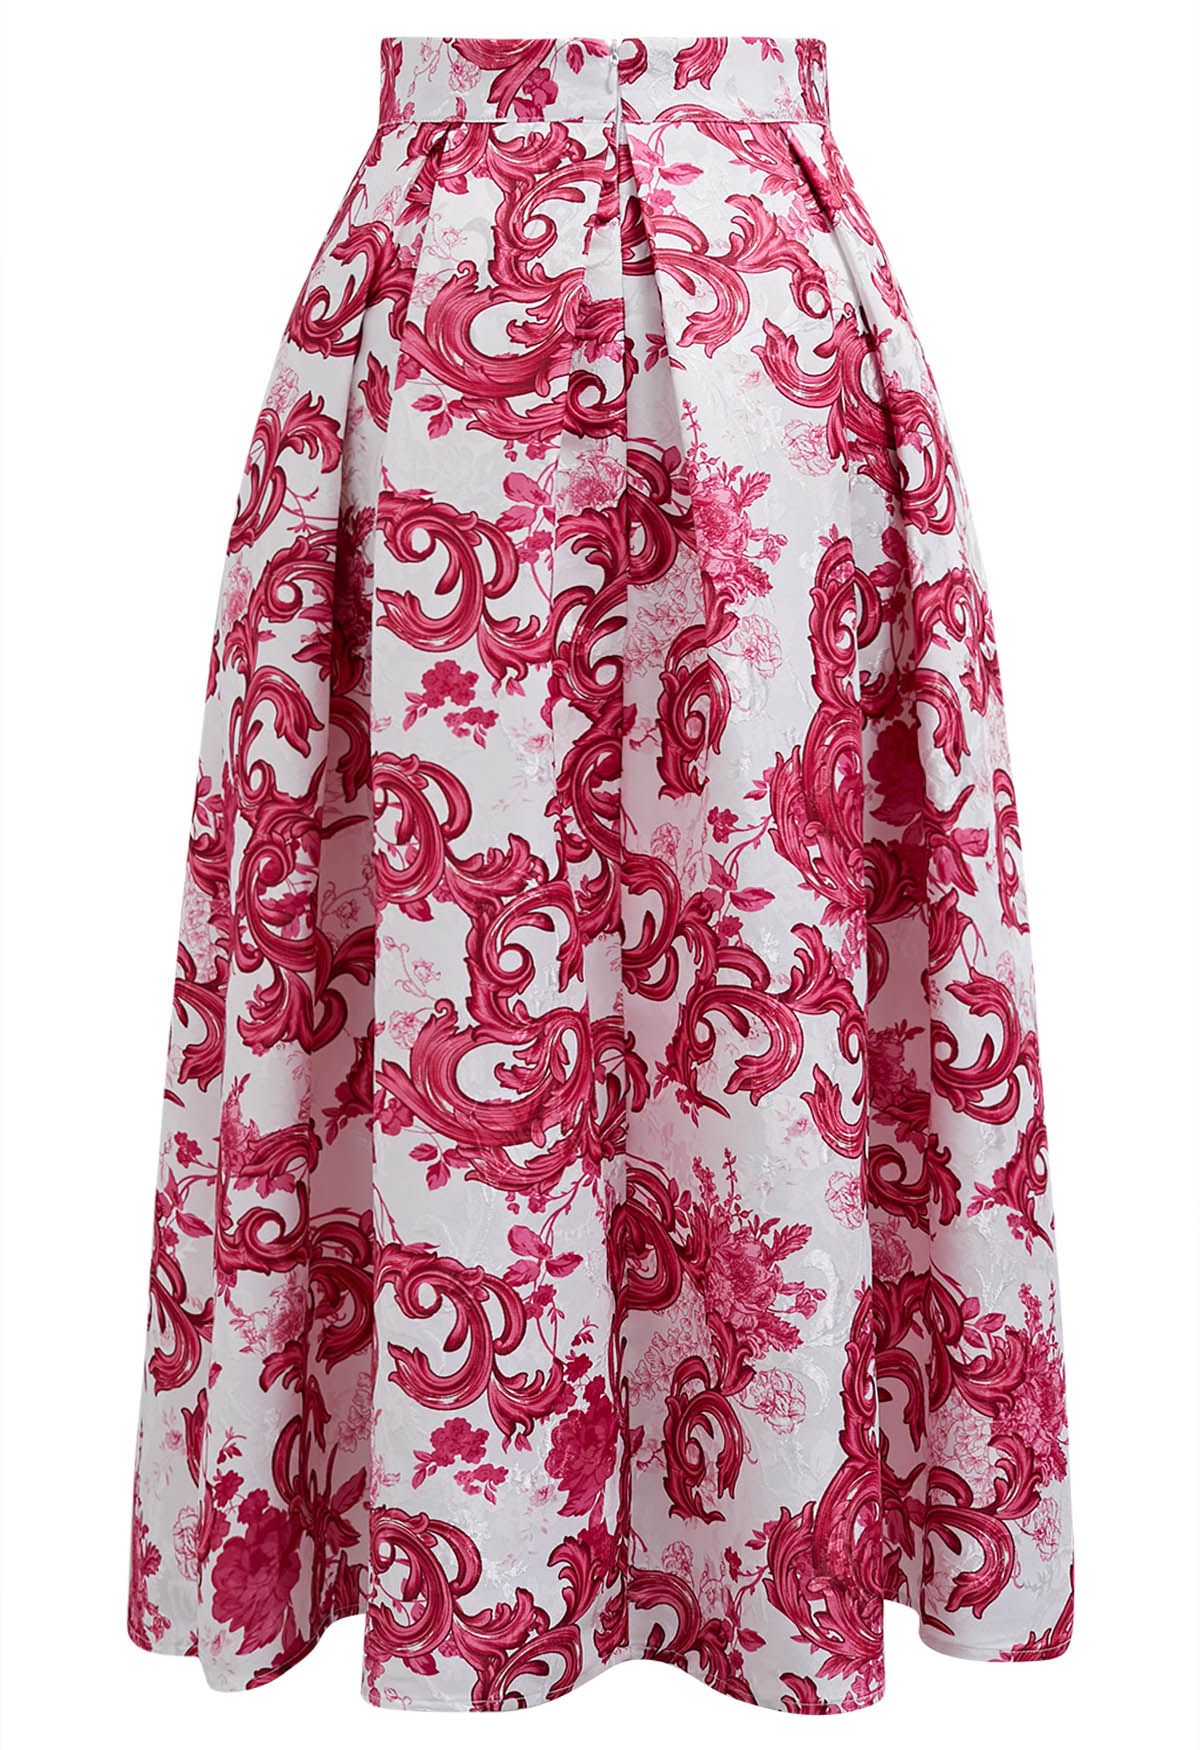 Falda midi plisada de jacquard con flores de color rojo vibrante